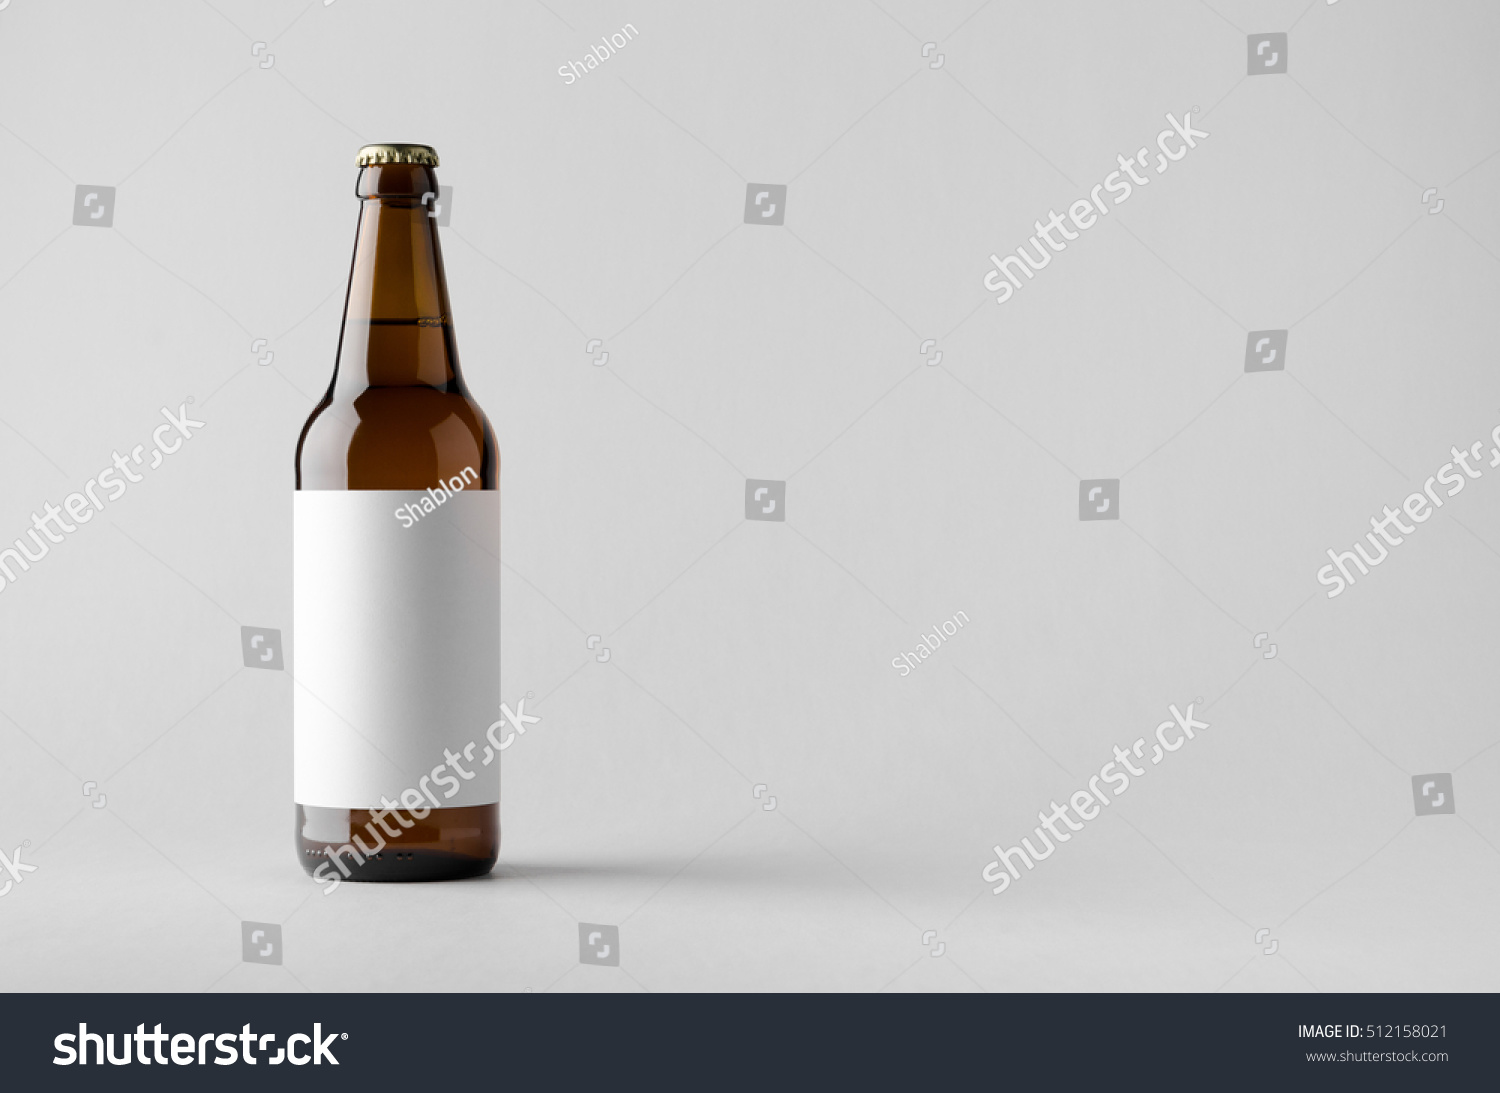 Beer Bottle Mock-Up - Blank Label #512158021